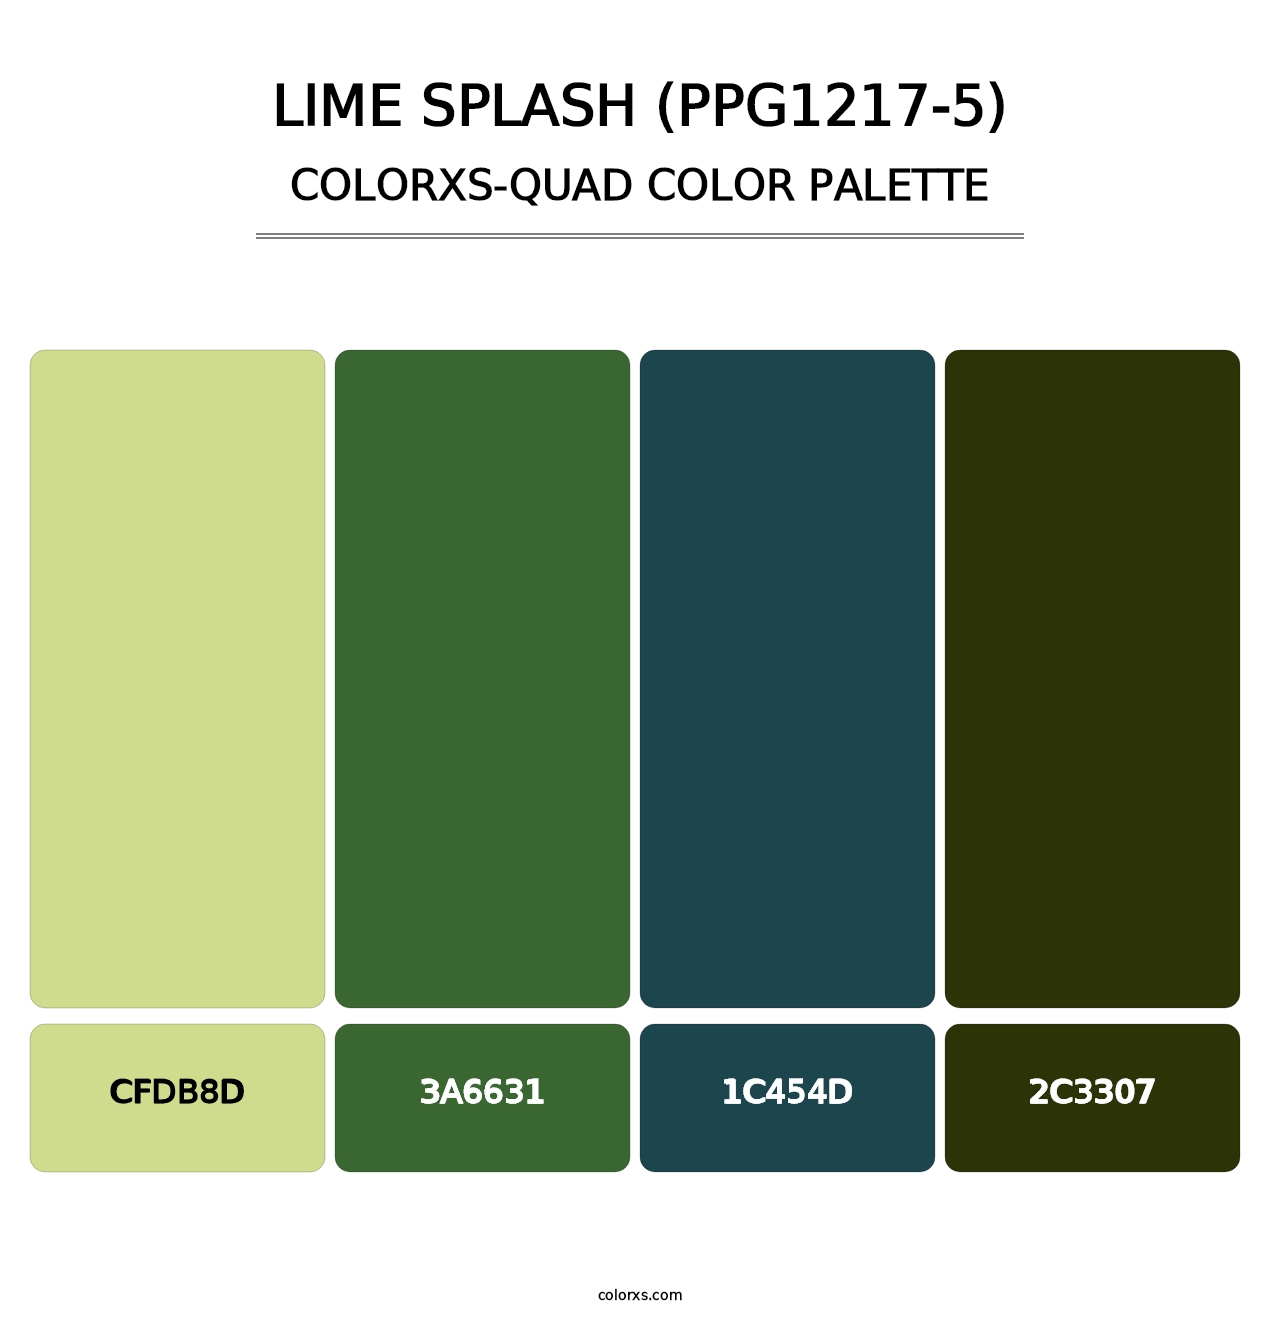 Lime Splash (PPG1217-5) - Colorxs Quad Palette